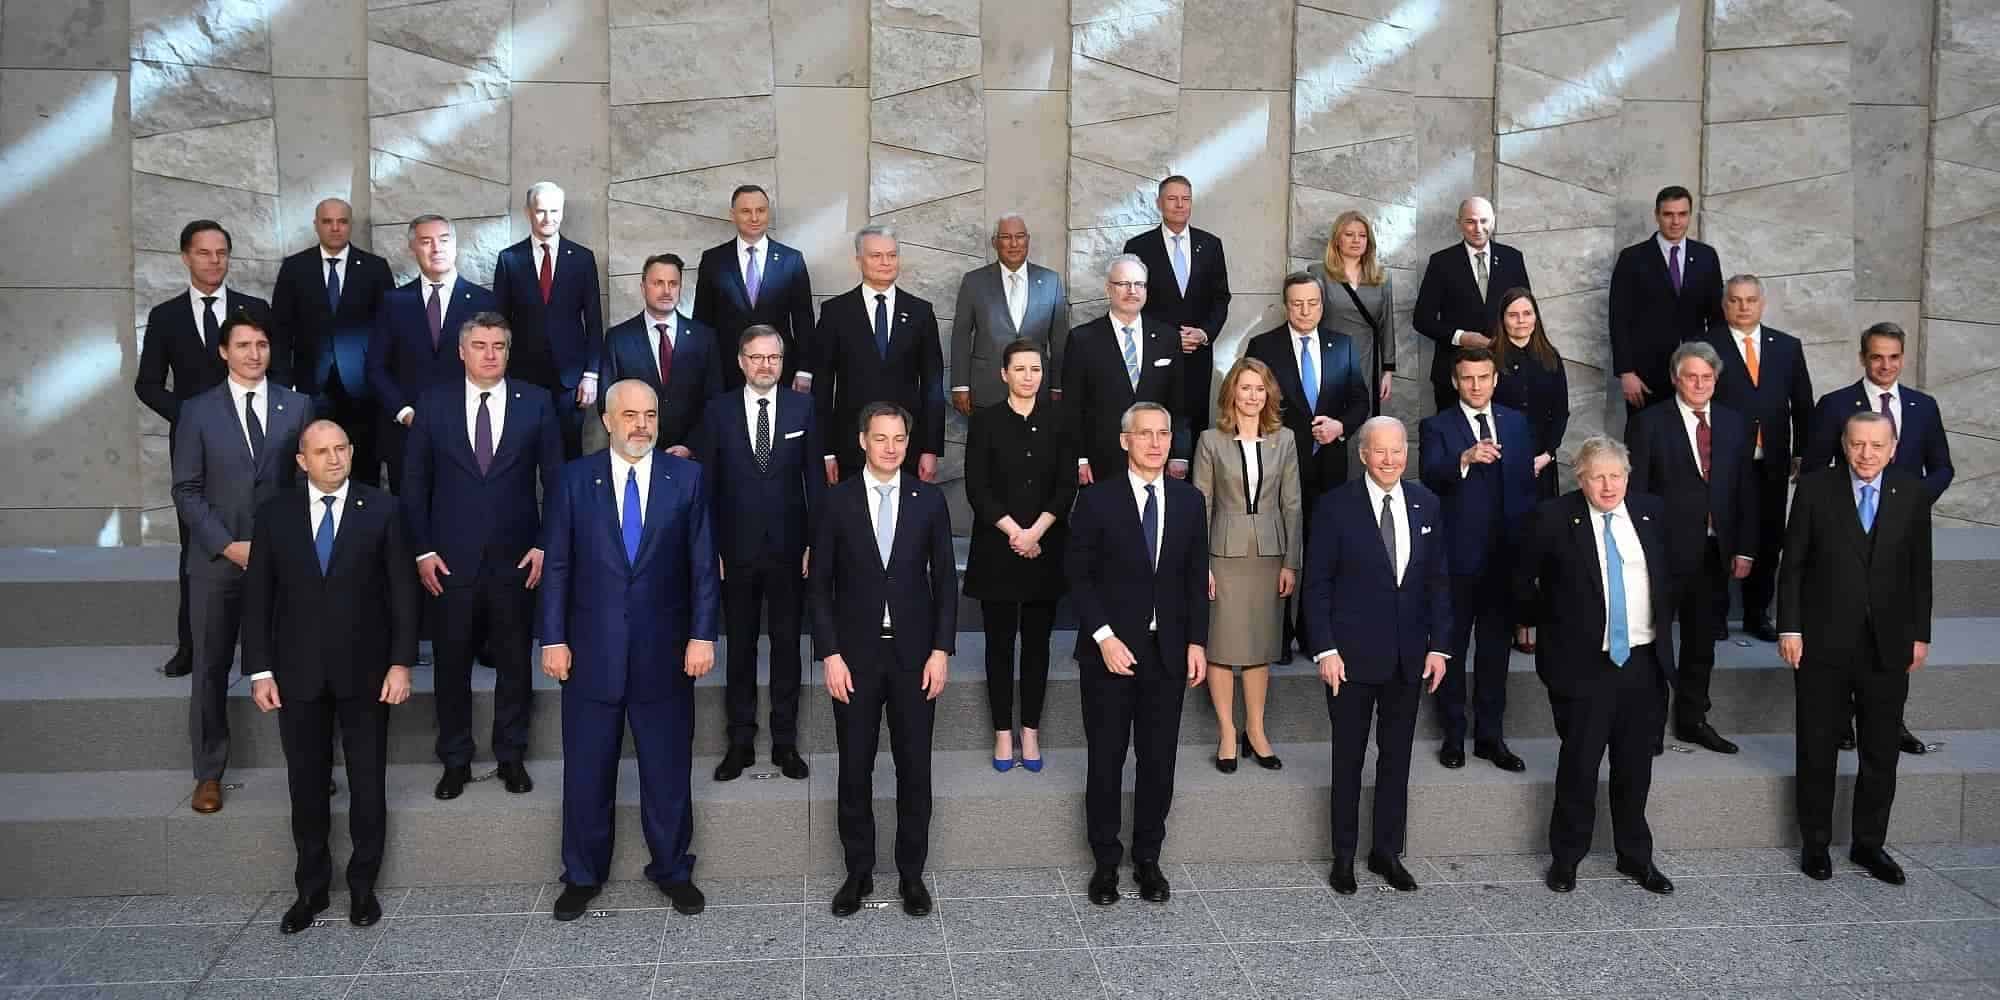 Οι αρχηγοί κρατών του ΝΑΤΟ στέκονται μαζί για μια οικογενειακή φωτογραφία κατά τη διάρκεια της έκτακτης Συνόδου Κορυφής του ΝΑΤΟ